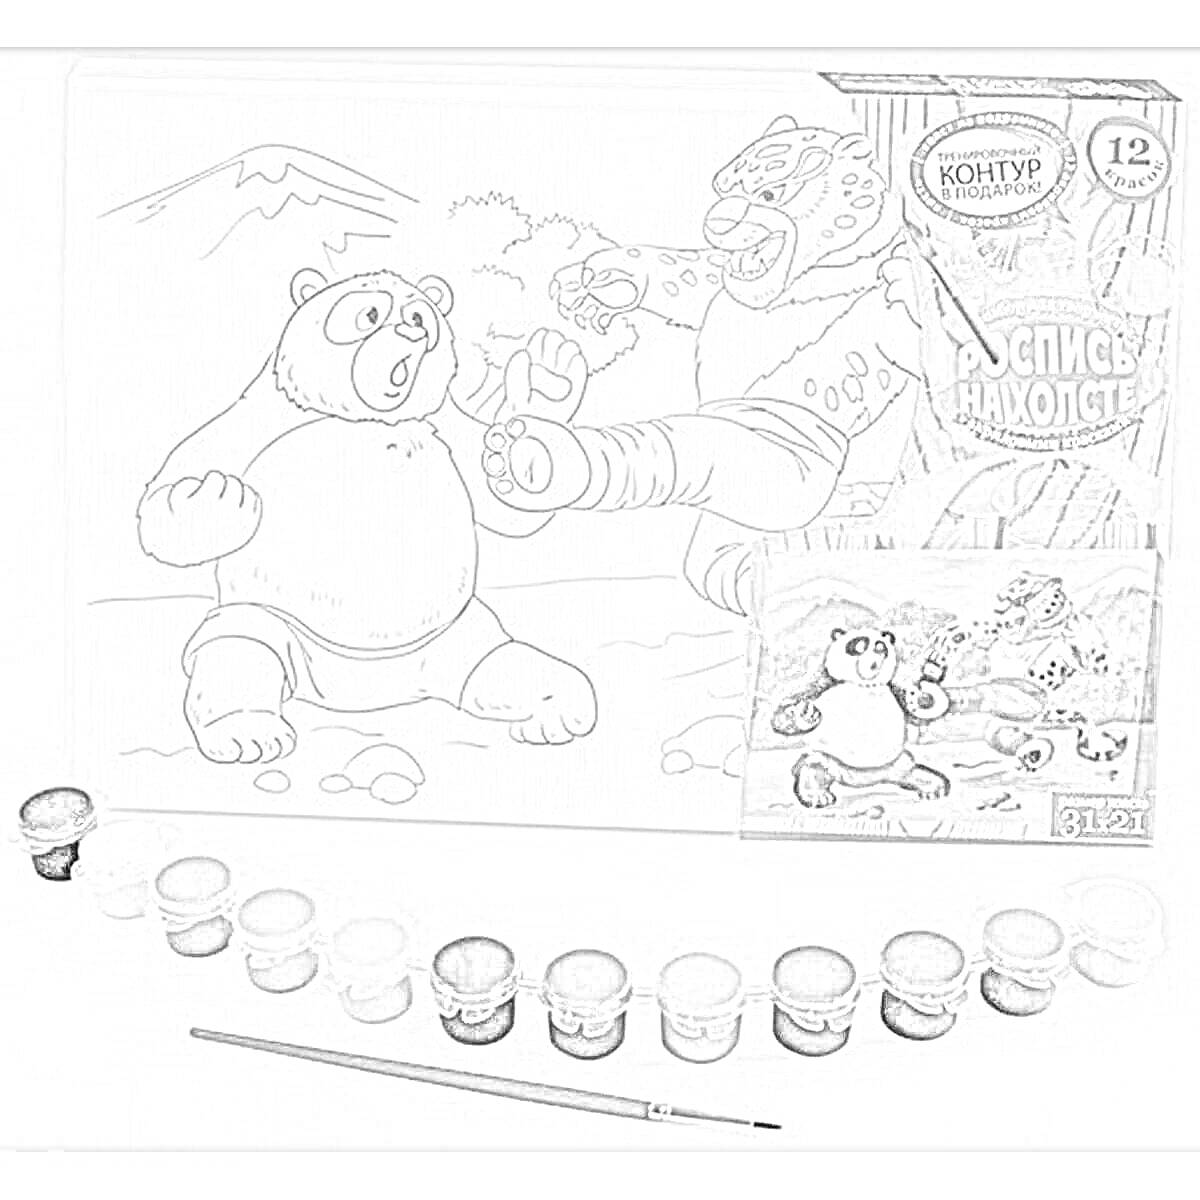 Раскраска Медведь и горилла сражаются на фоне гор. В наборе: раскраска на холсте с изображением медведя и гориллы, 12 баночек с акриловыми красками и кисточка.